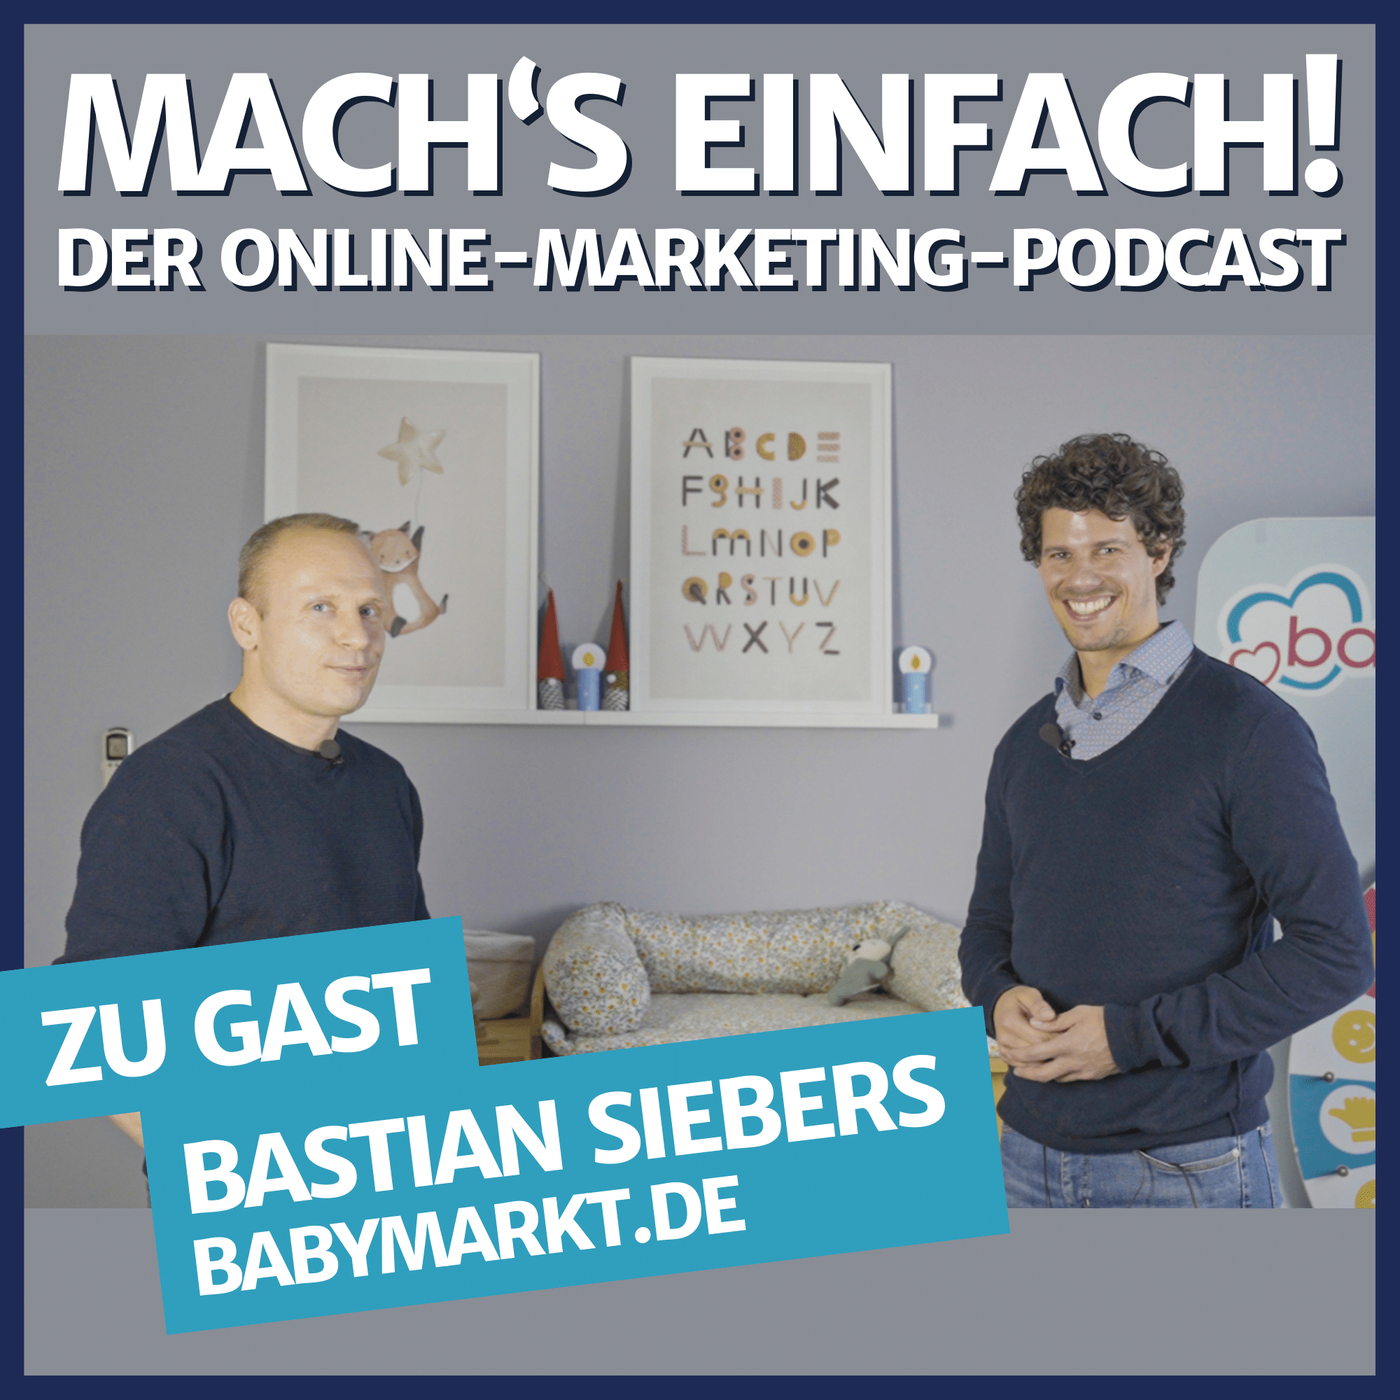 #4 mit Bastian Siebers von babymarkt.de